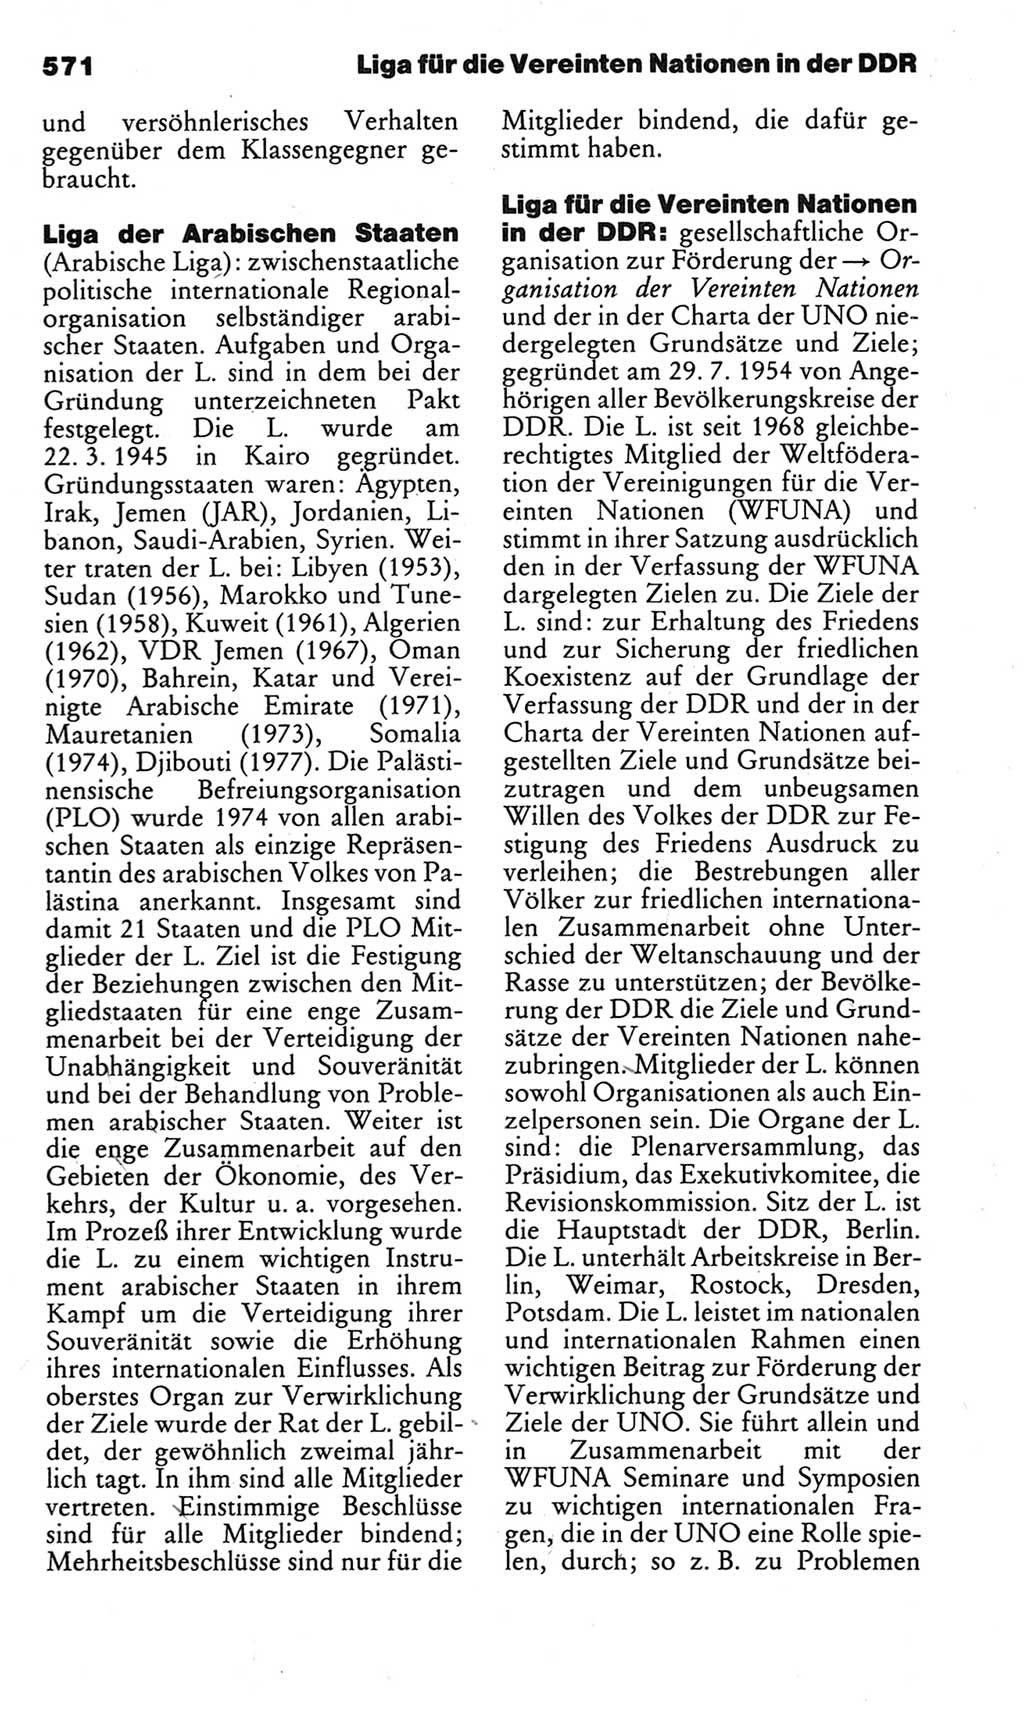 Kleines politisches Wörterbuch [Deutsche Demokratische Republik (DDR)] 1983, Seite 571 (Kl. pol. Wb. DDR 1983, S. 571)